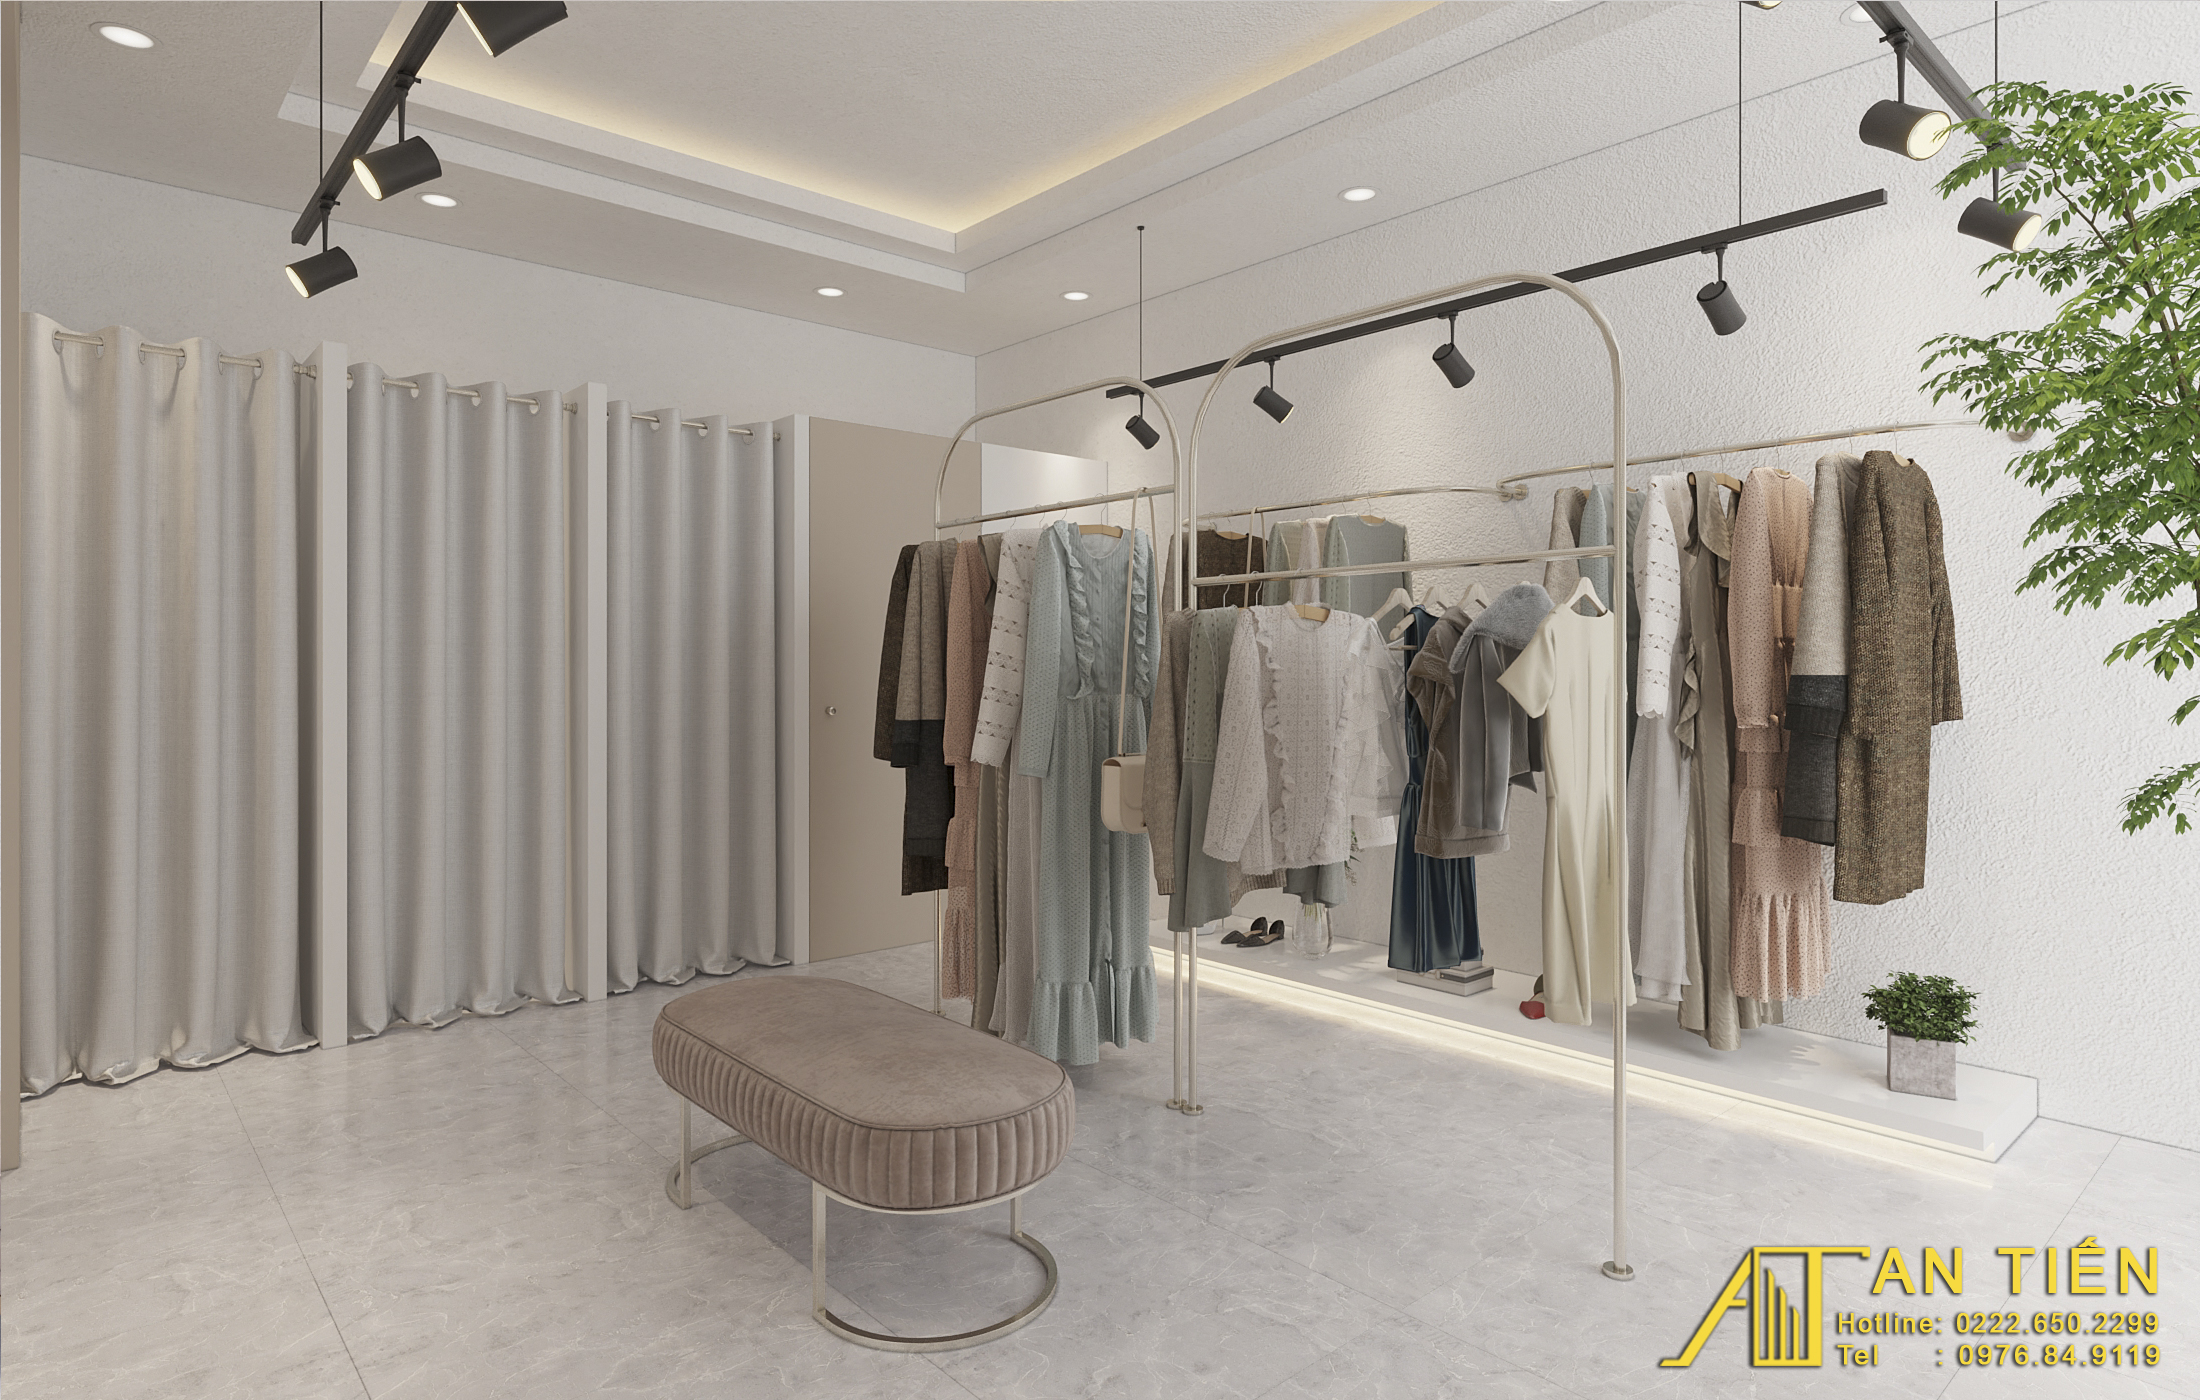 Thiết kế nội thất Shop tại Bắc Ninh Shop quần áo Bắc Ninh 1634097309 5